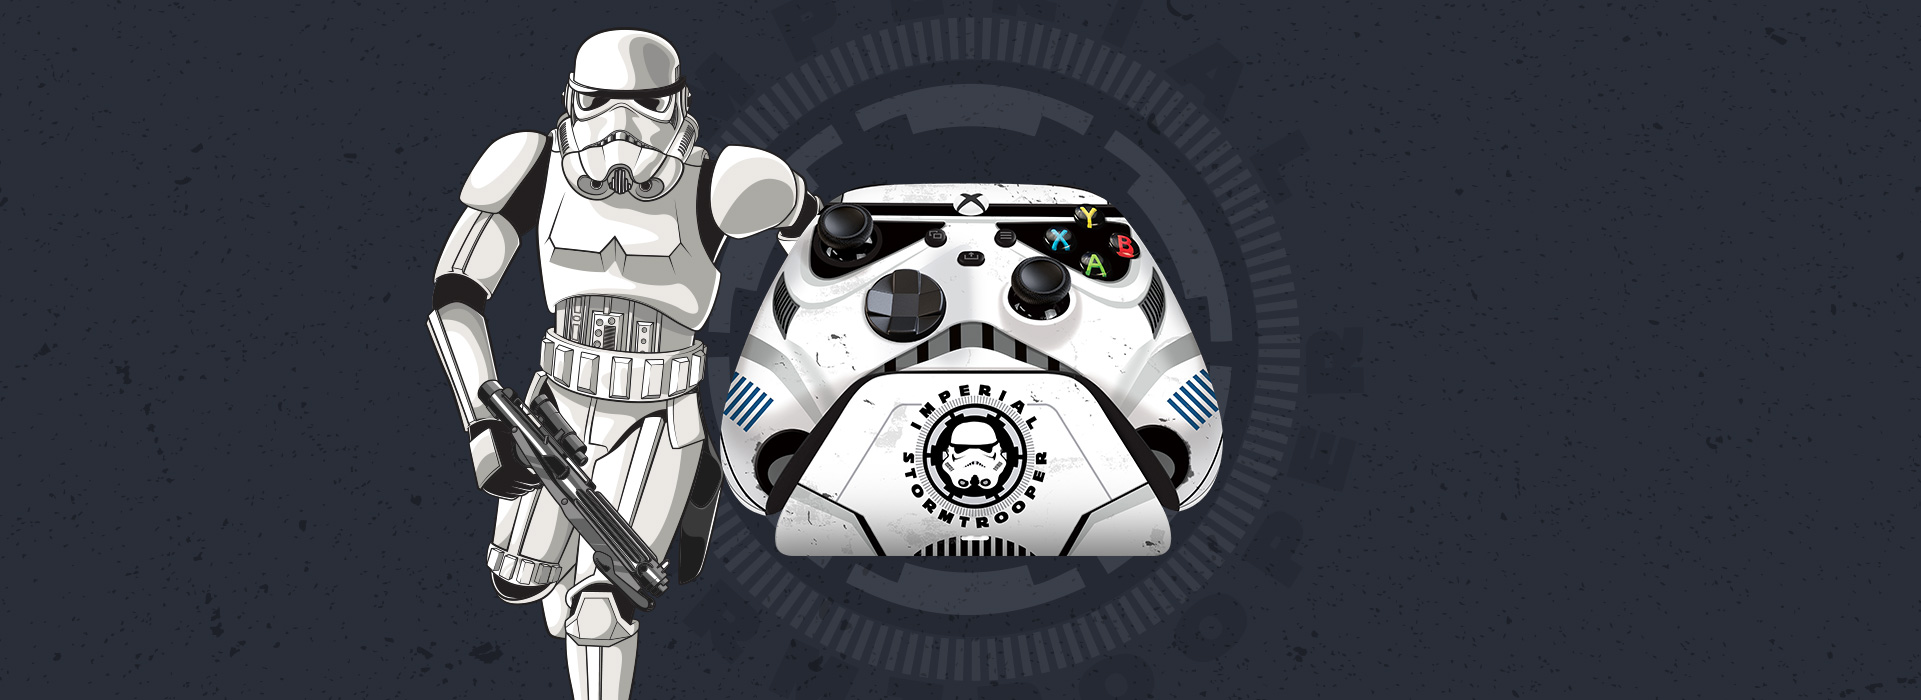 庆祝星球大战日 雷蛇推出帝国冲锋兵主题限量Xbox手柄